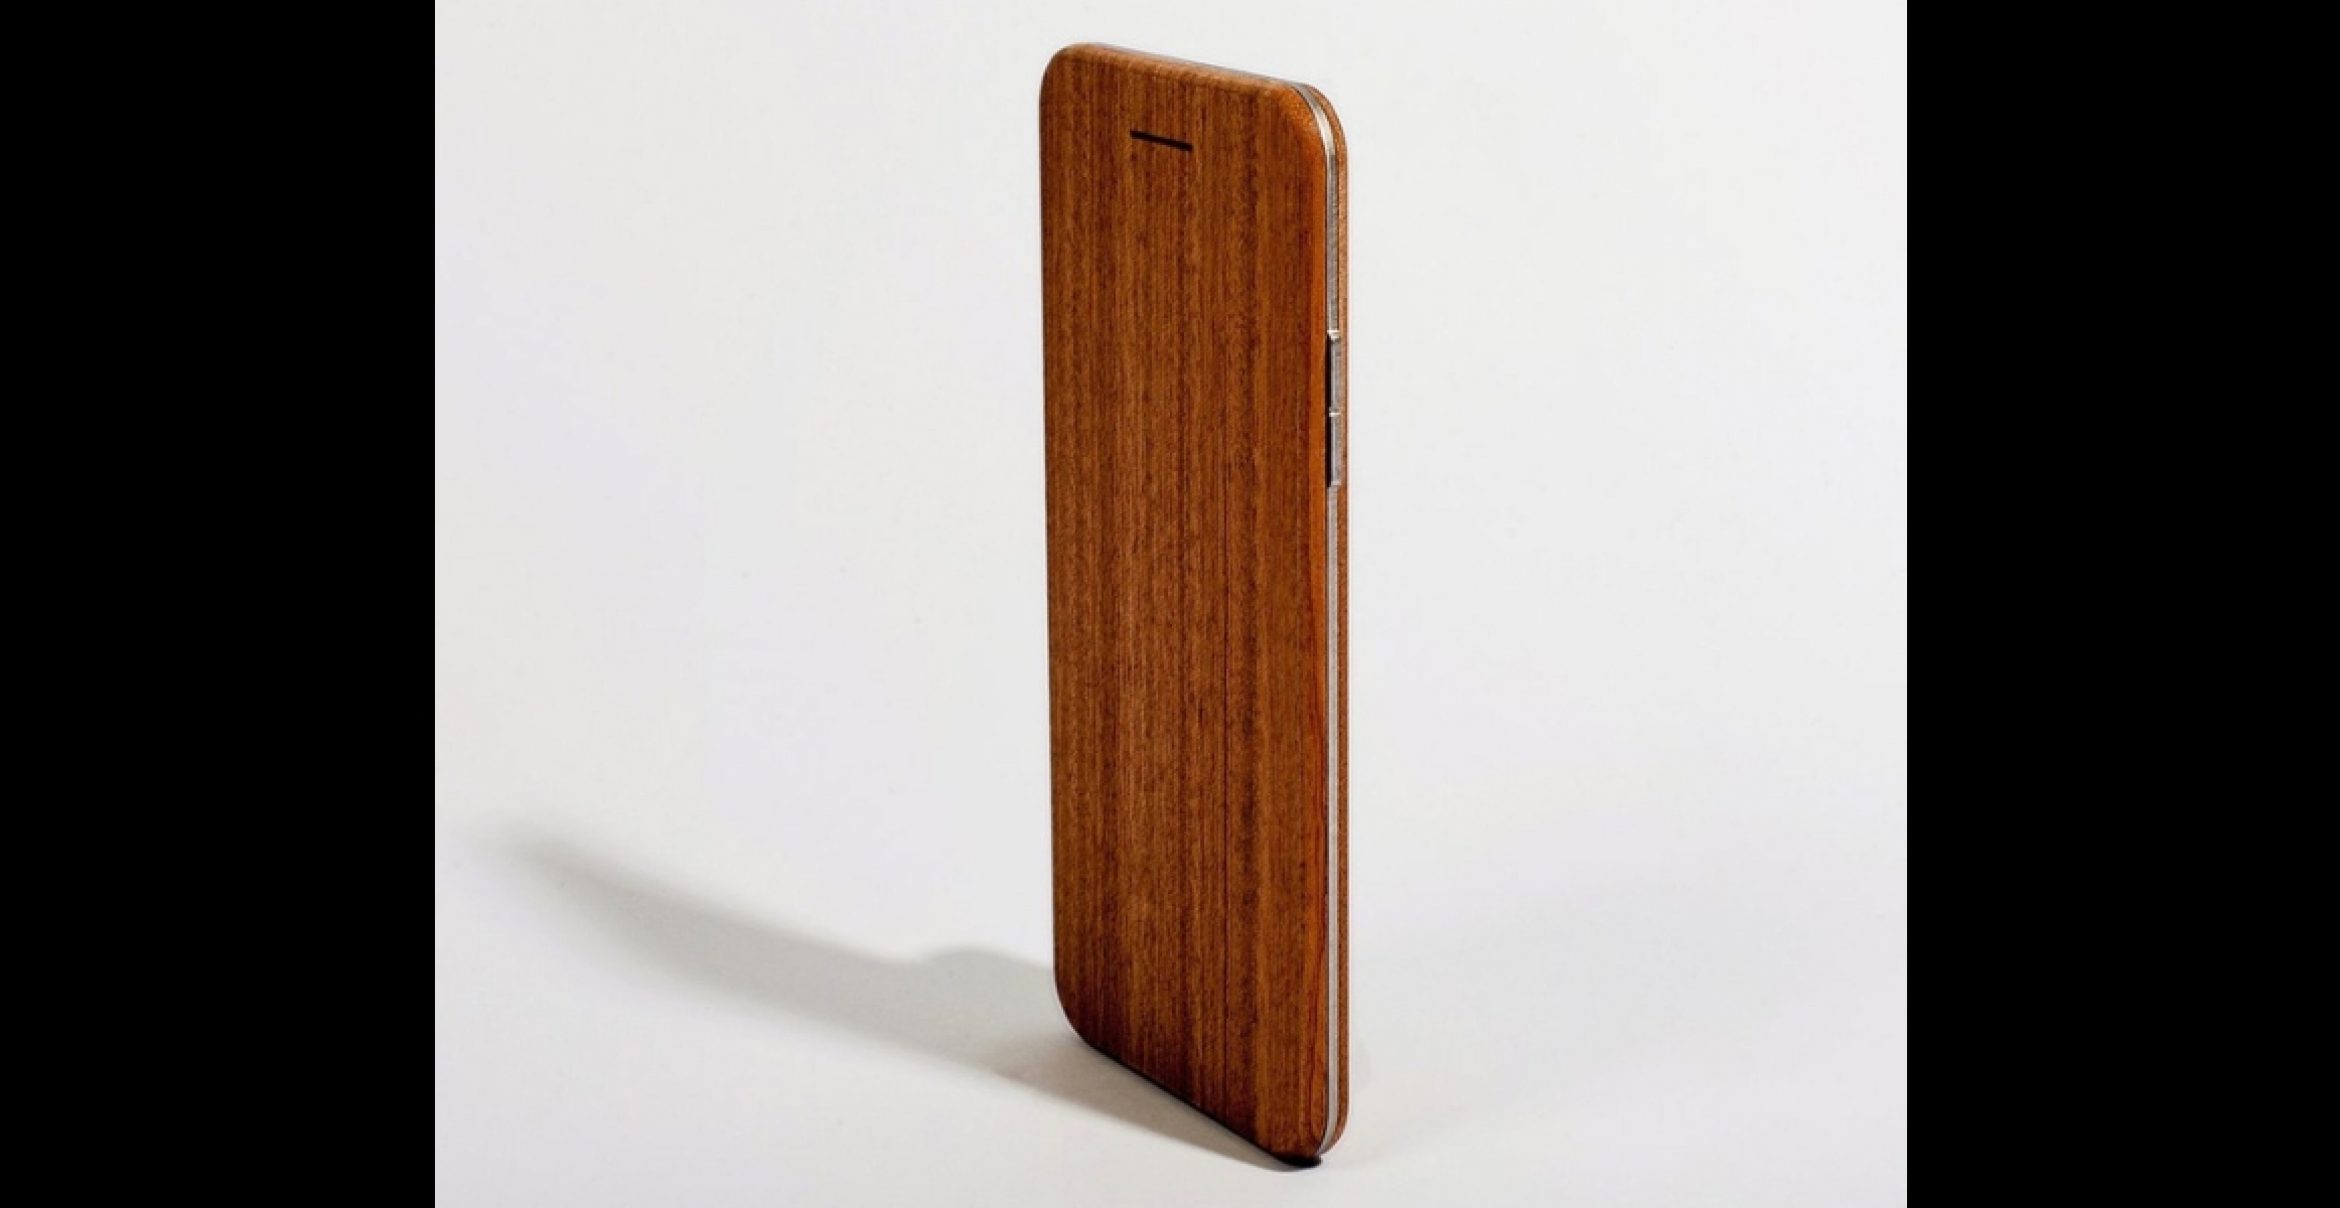 Dieses Stück Holz fühlt sich an wie ein Smartphone, ist aber keins